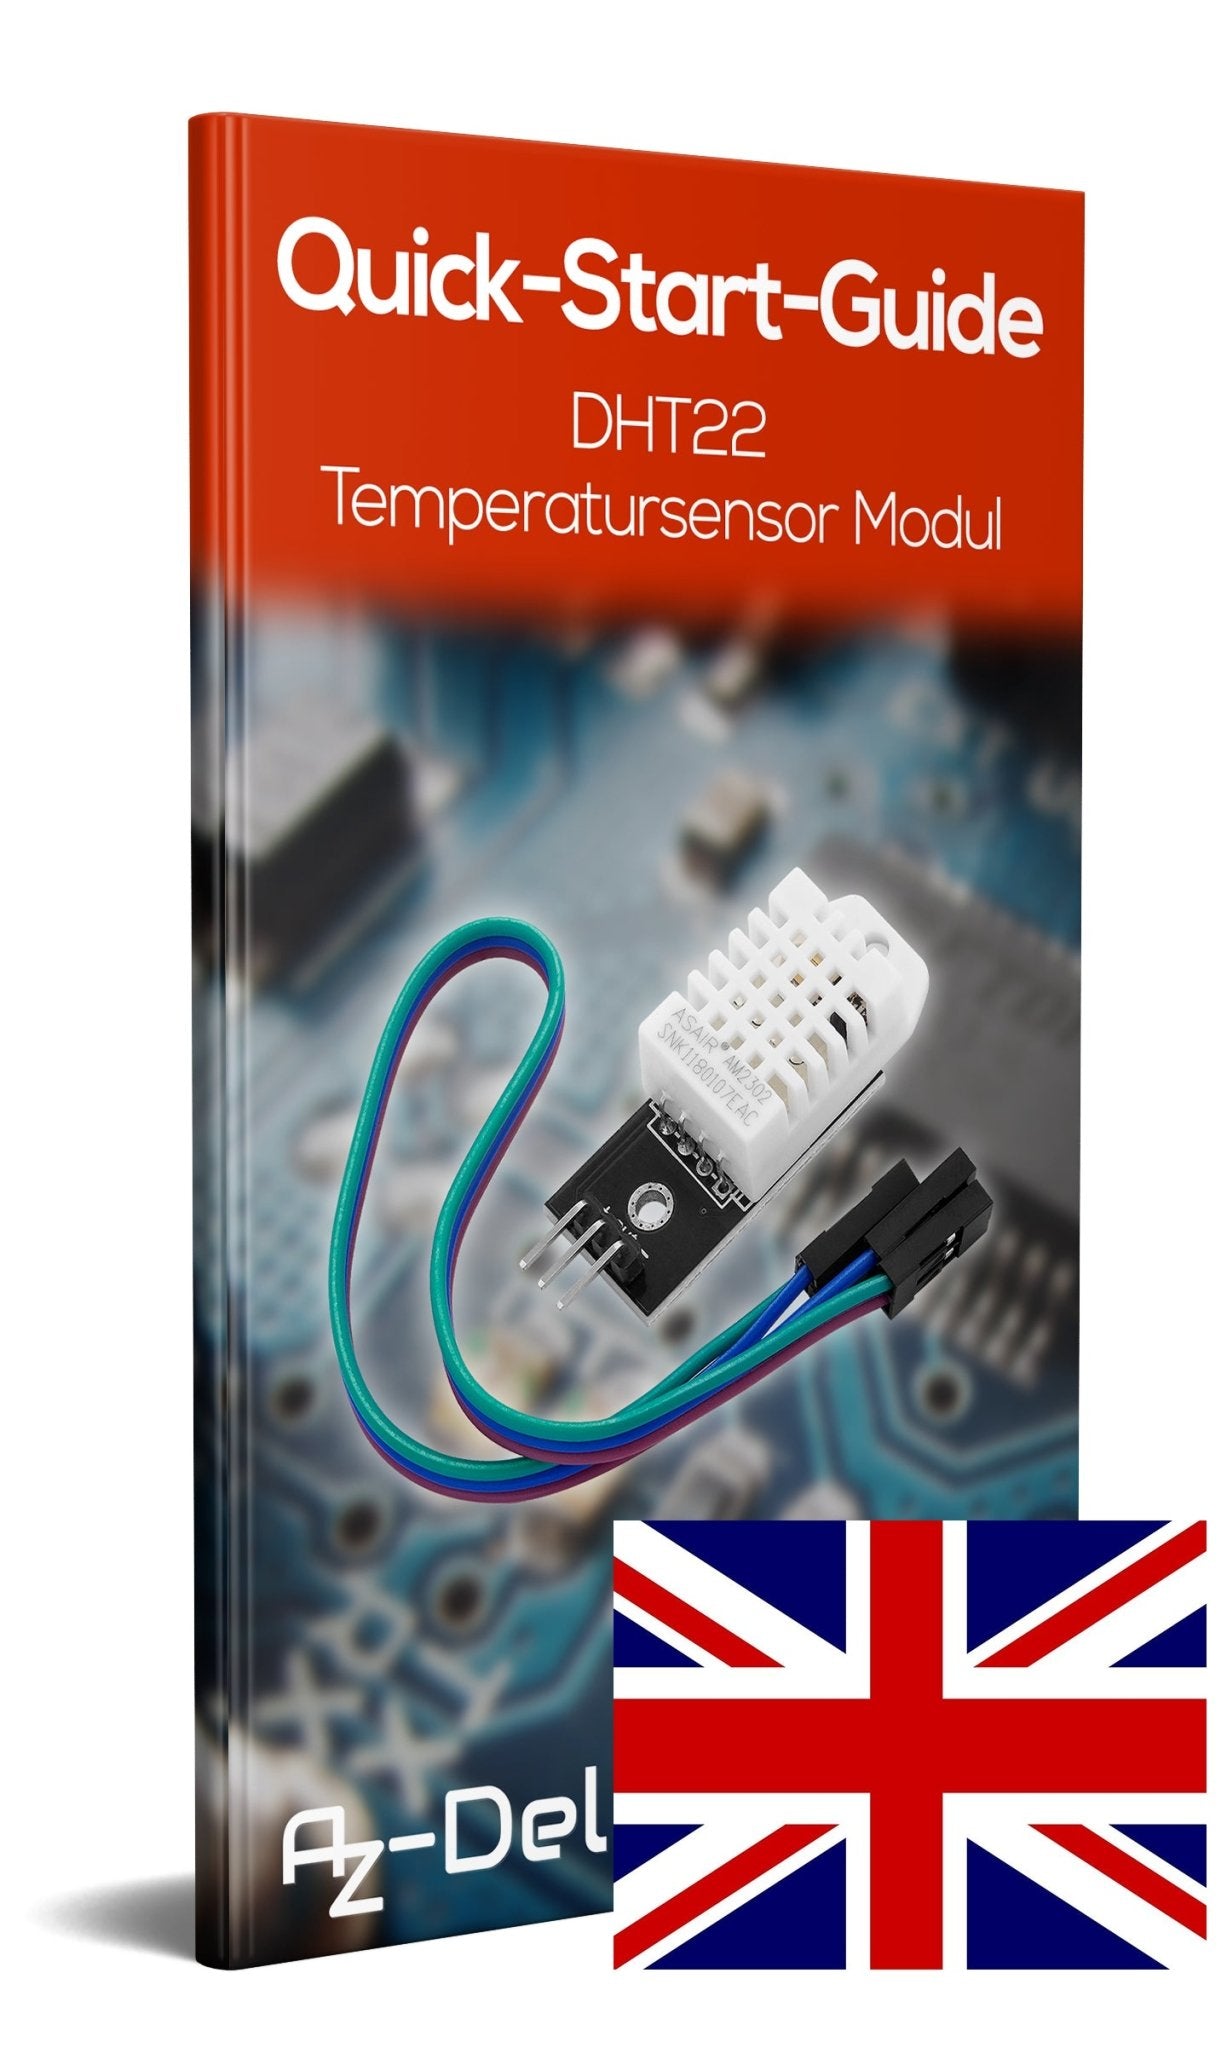 DHT22 AM2302 Temperatursensor und Luftfeuchtigkeitssensor mit Platine und Kabel - AZ-Delivery